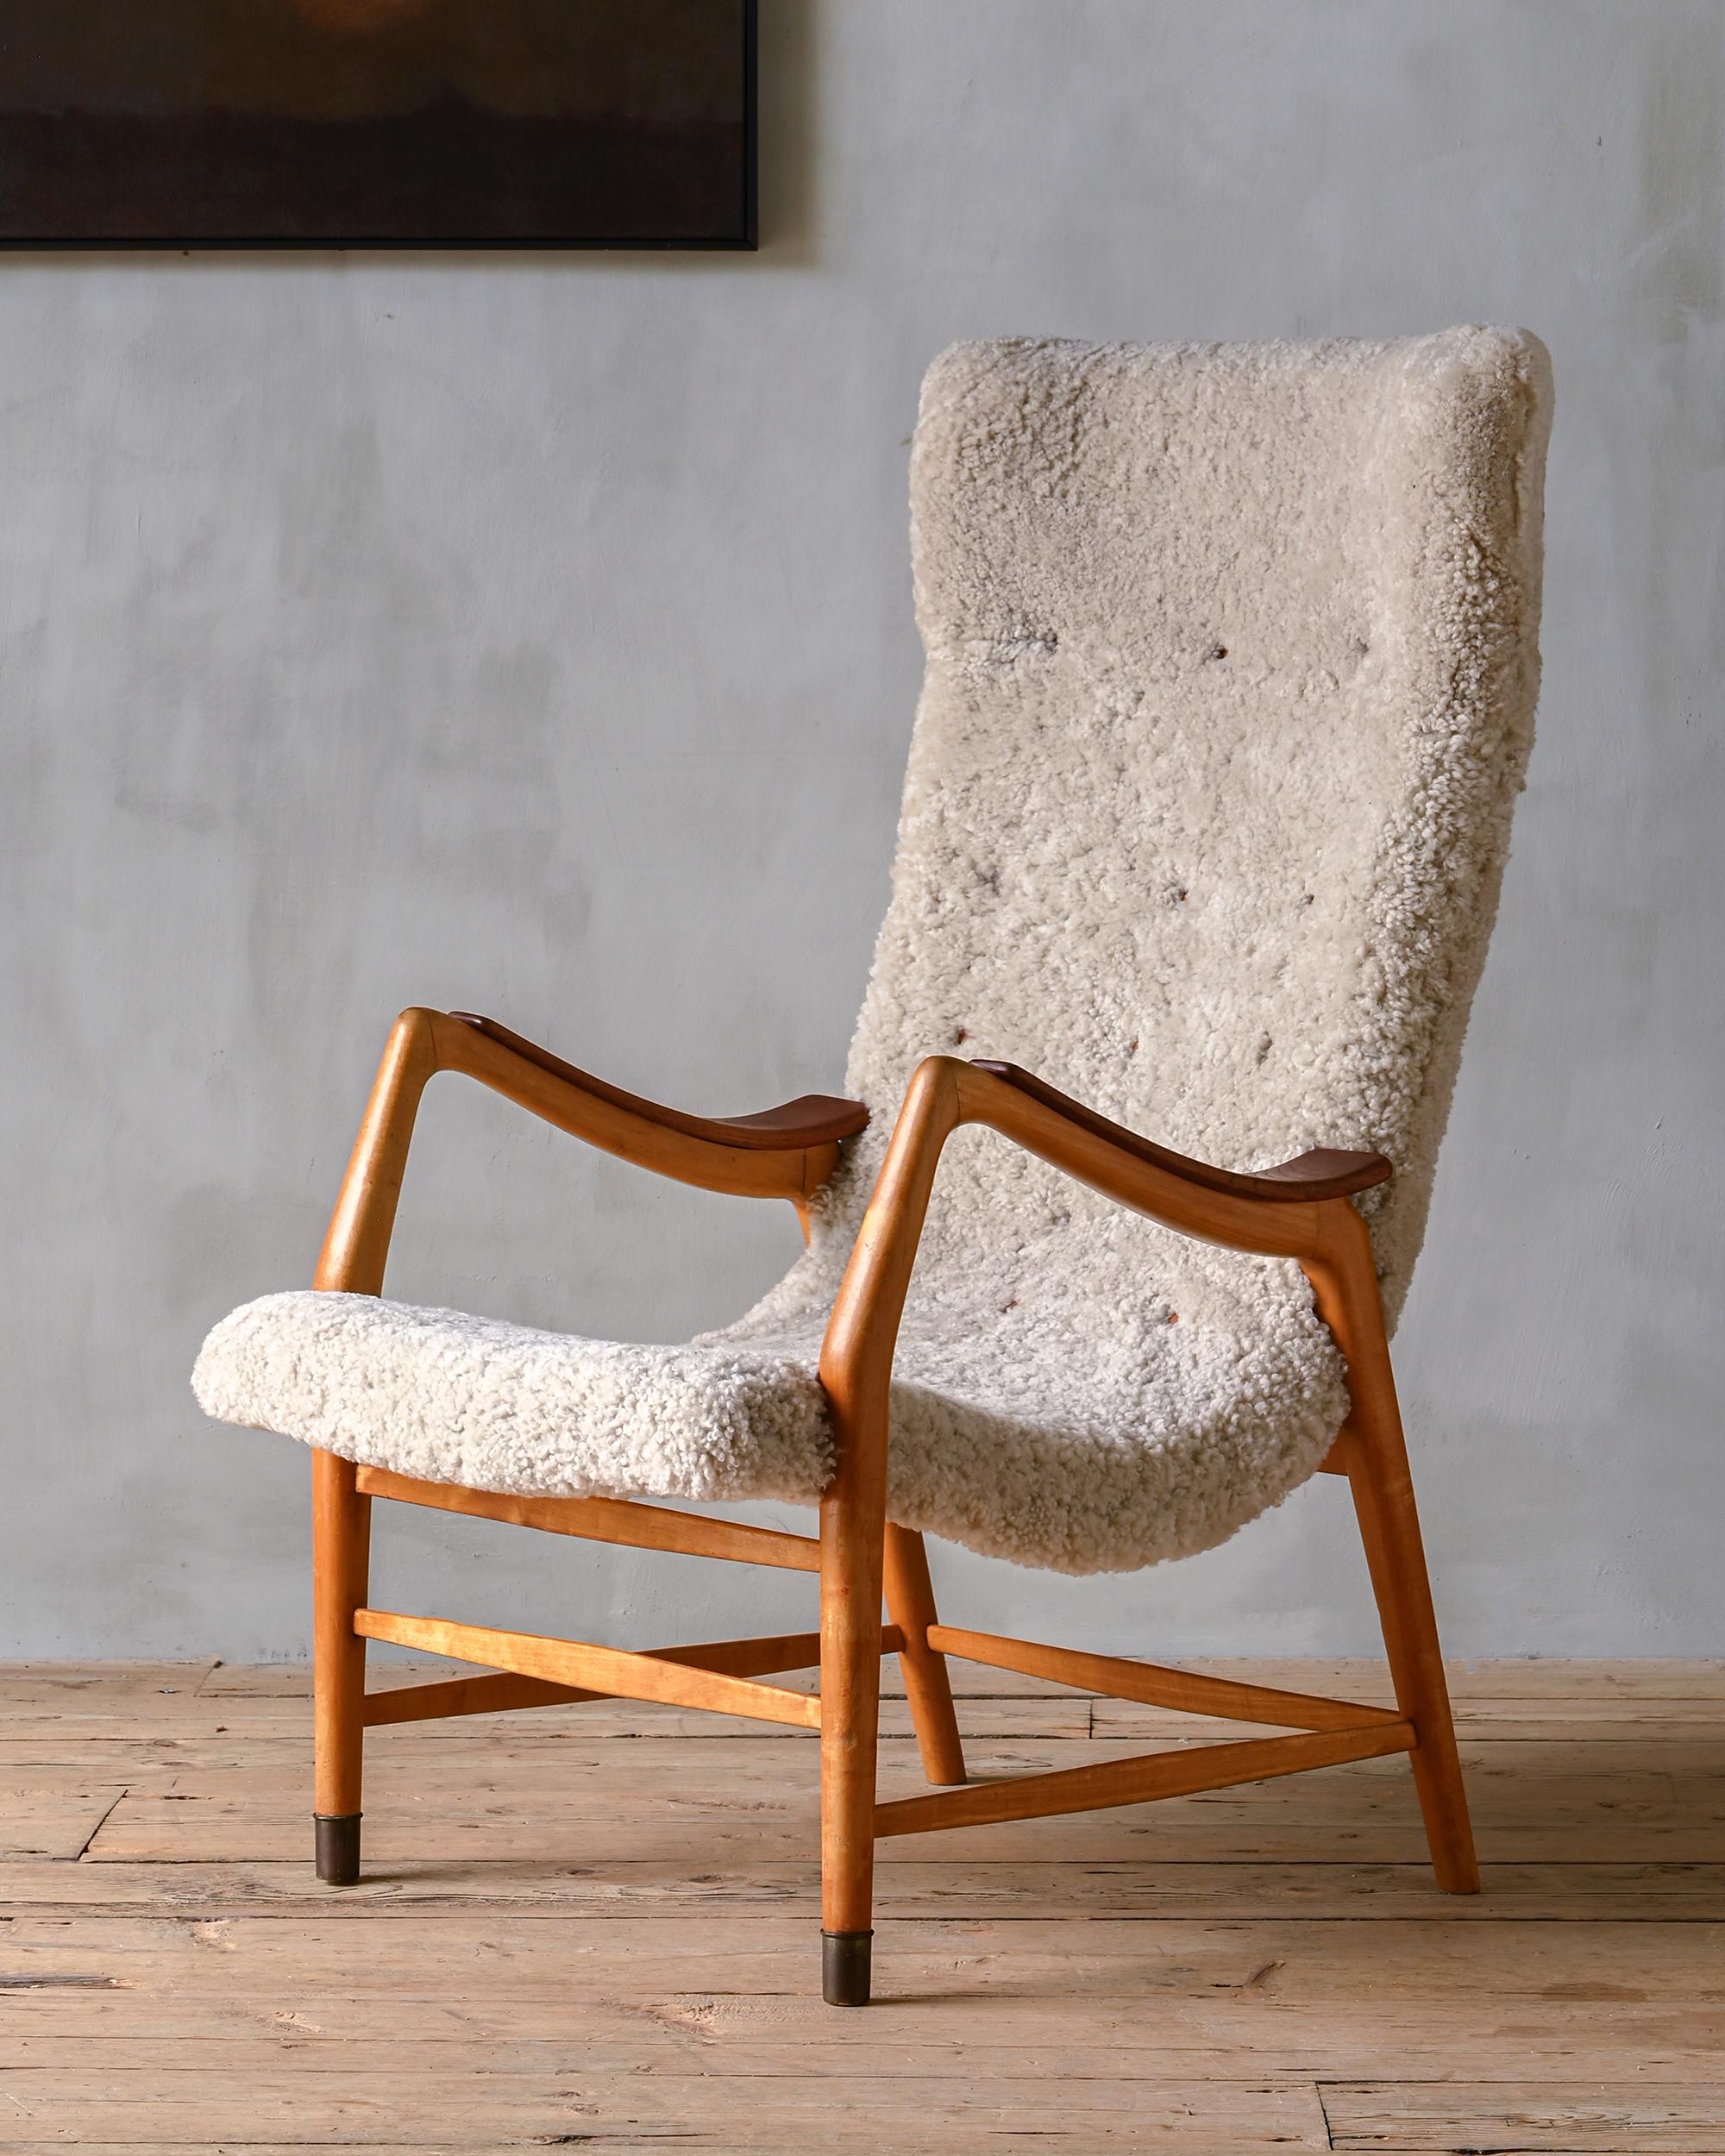 Rare easy chair reupholstered in sheepskin by Bertil Fridhagen for Bodafors, 1940s, Sweden.